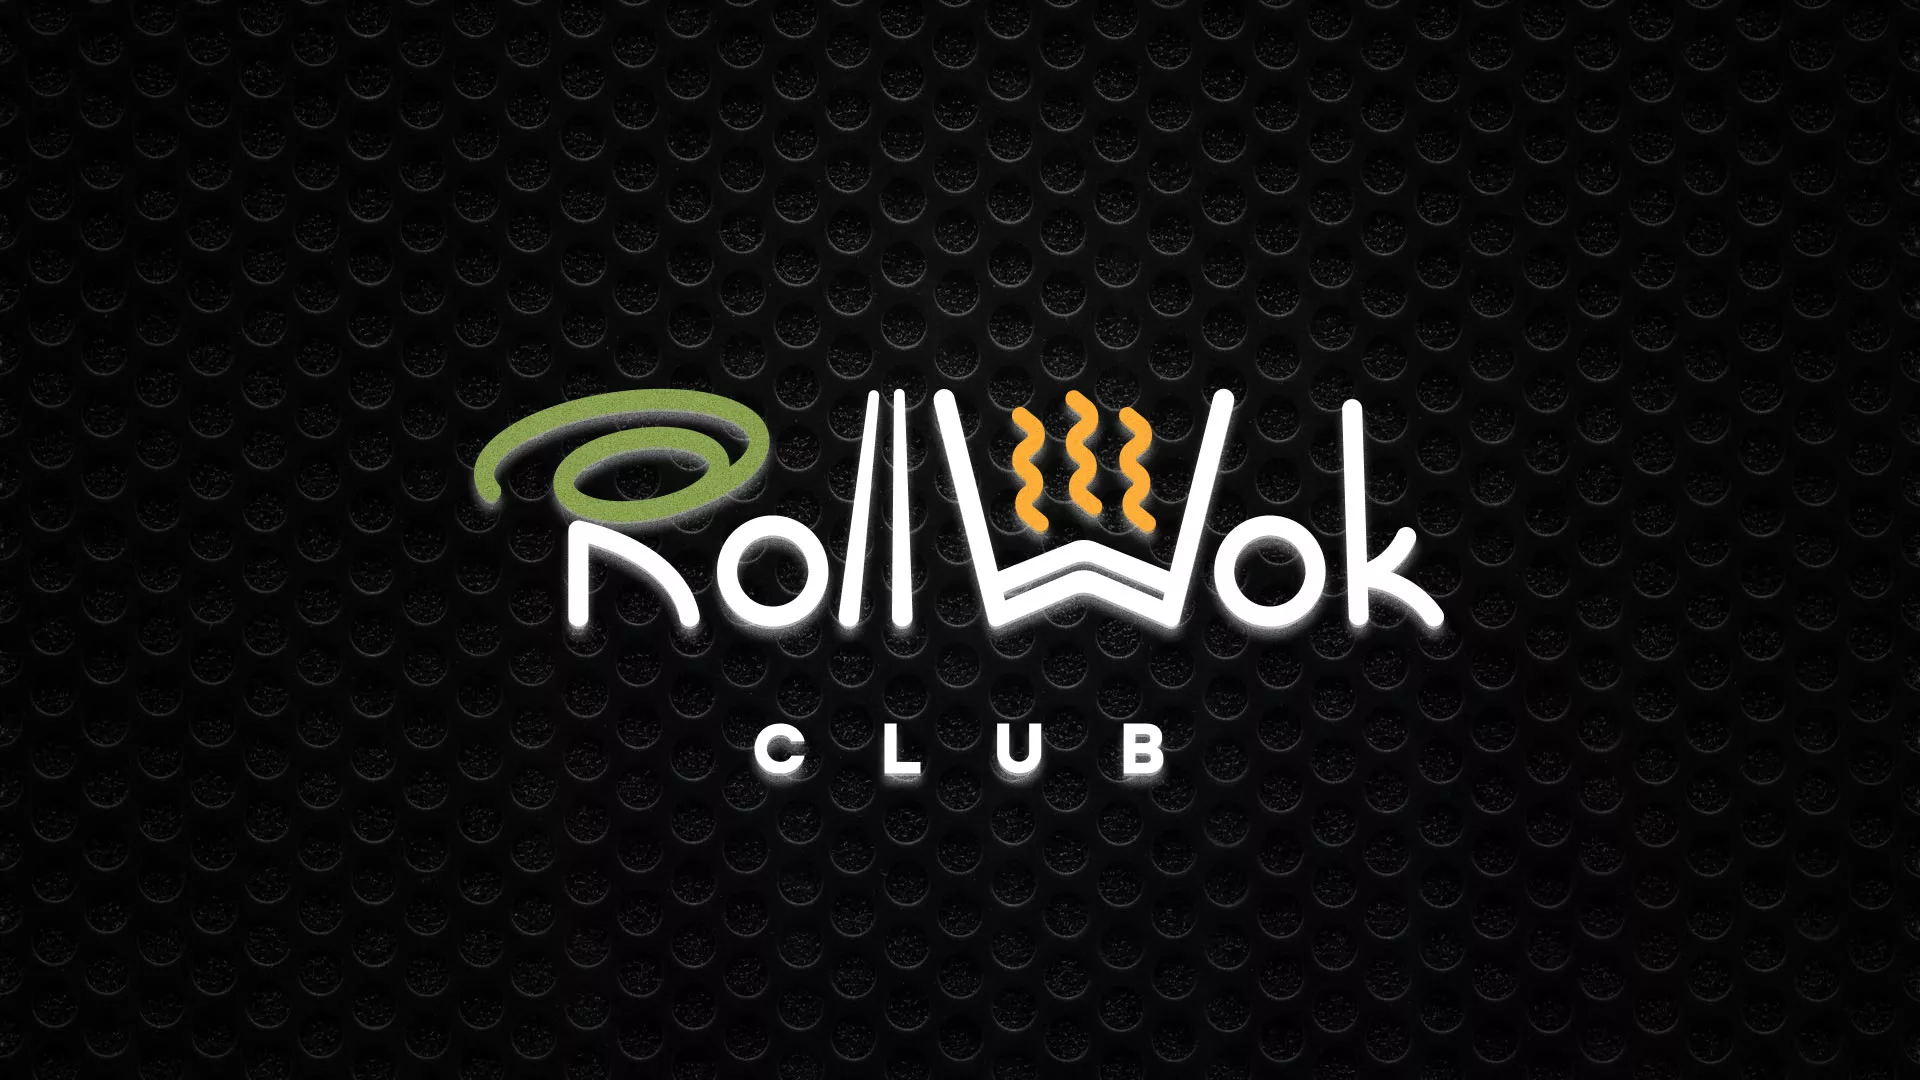 Брендирование торговых точек суши-бара «Roll Wok Club» в Болгаре